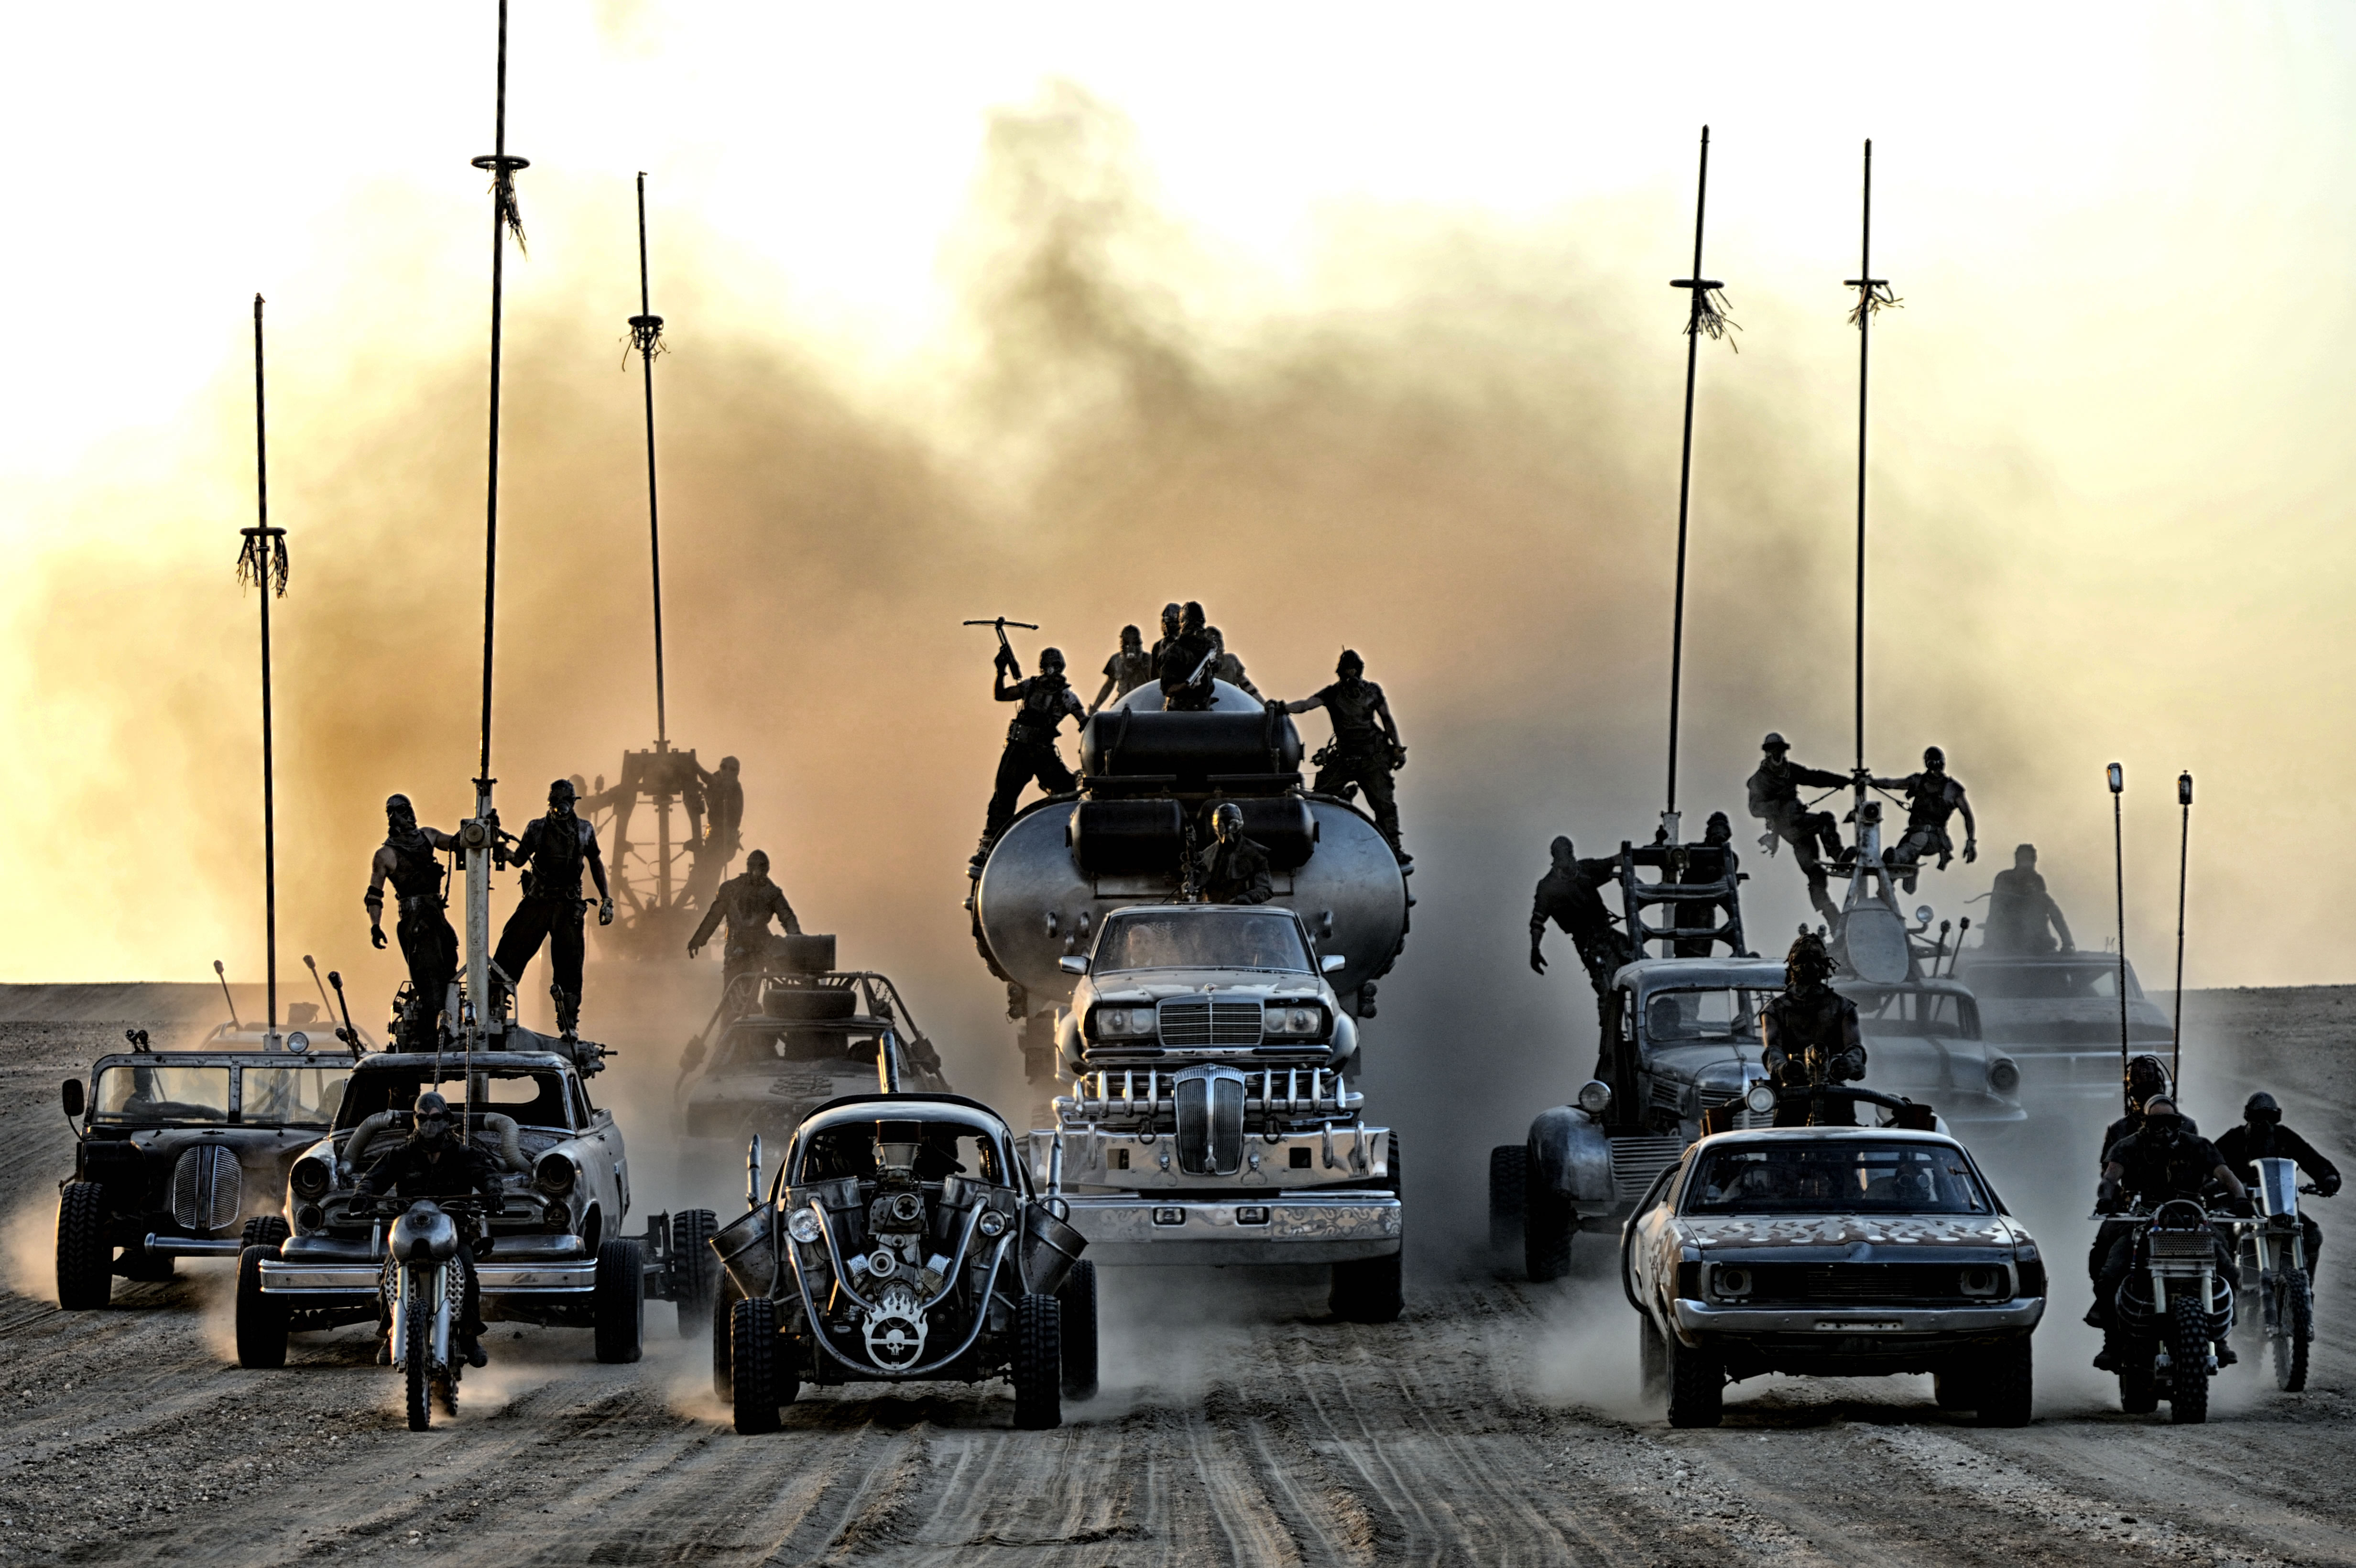 Kino premijere: "Mad Max: Fury Road"